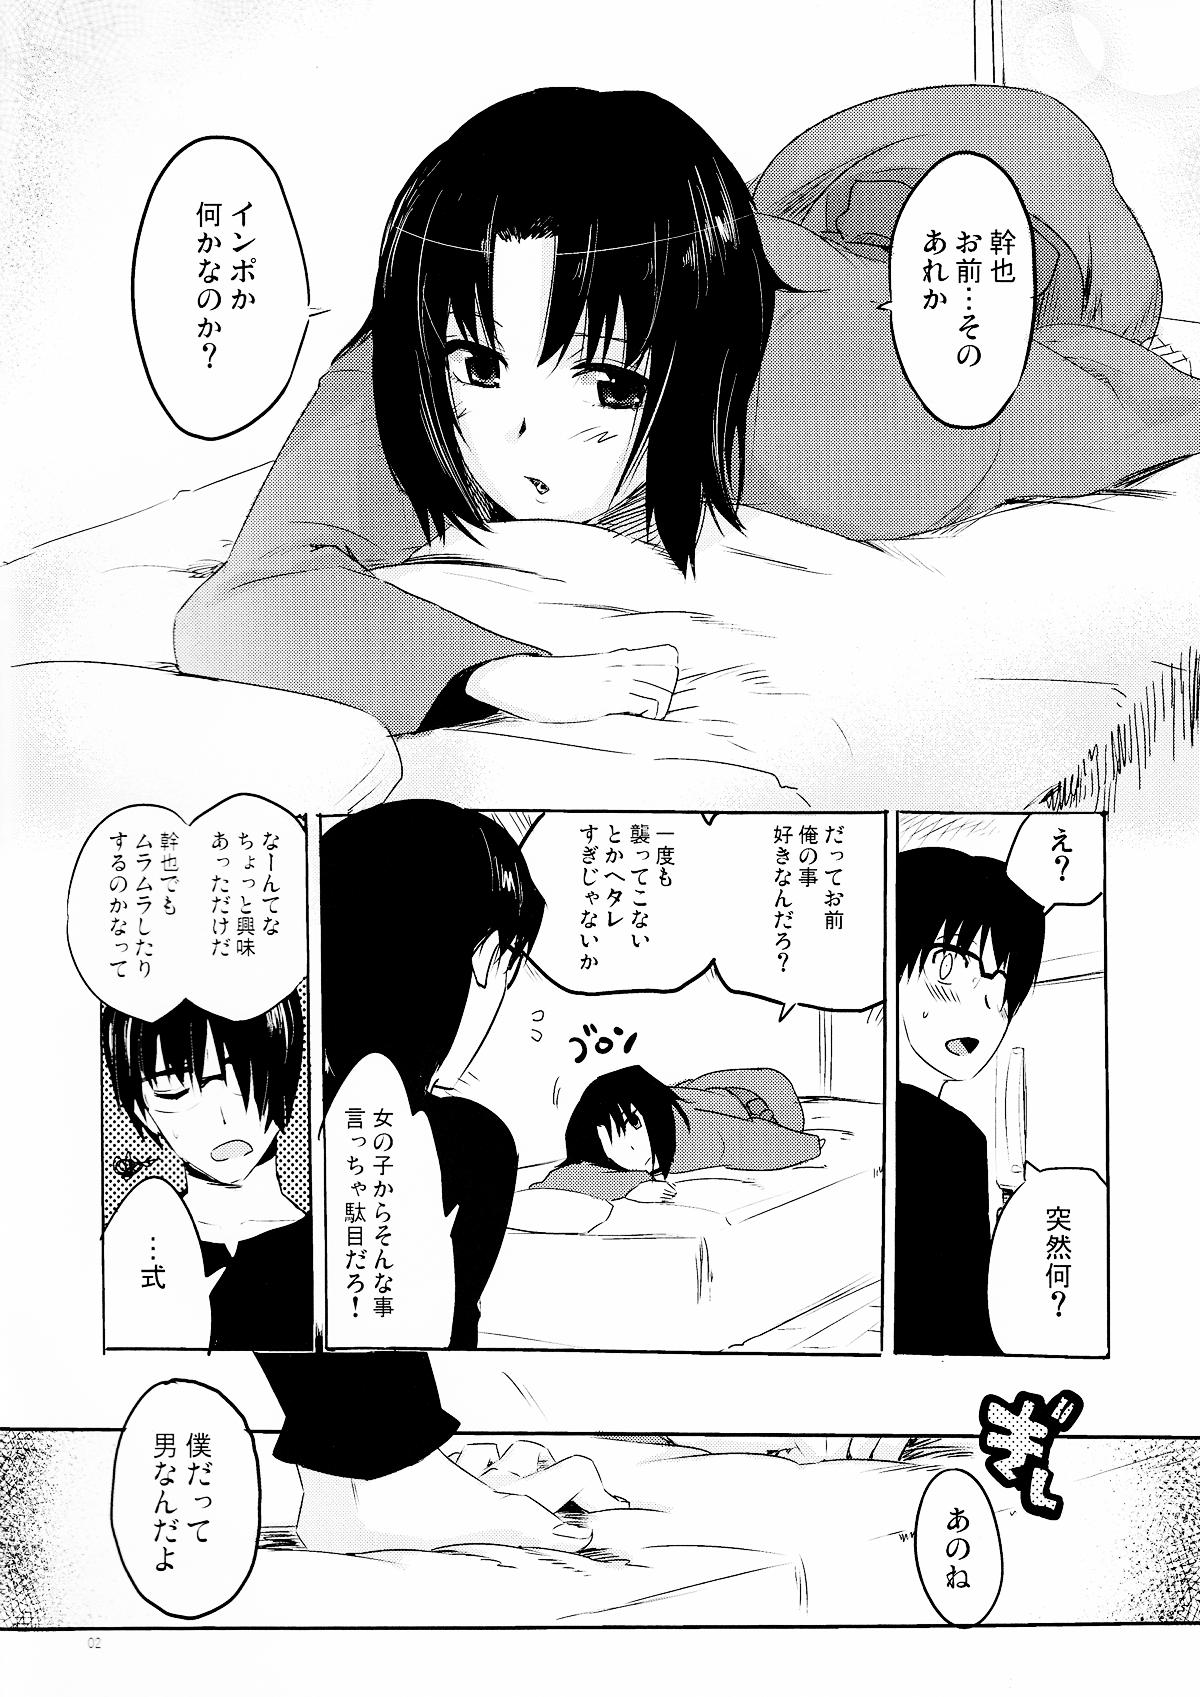 Twinks Furimawasareru Hitotachi - Kara no kyoukai Femdom - Page 2